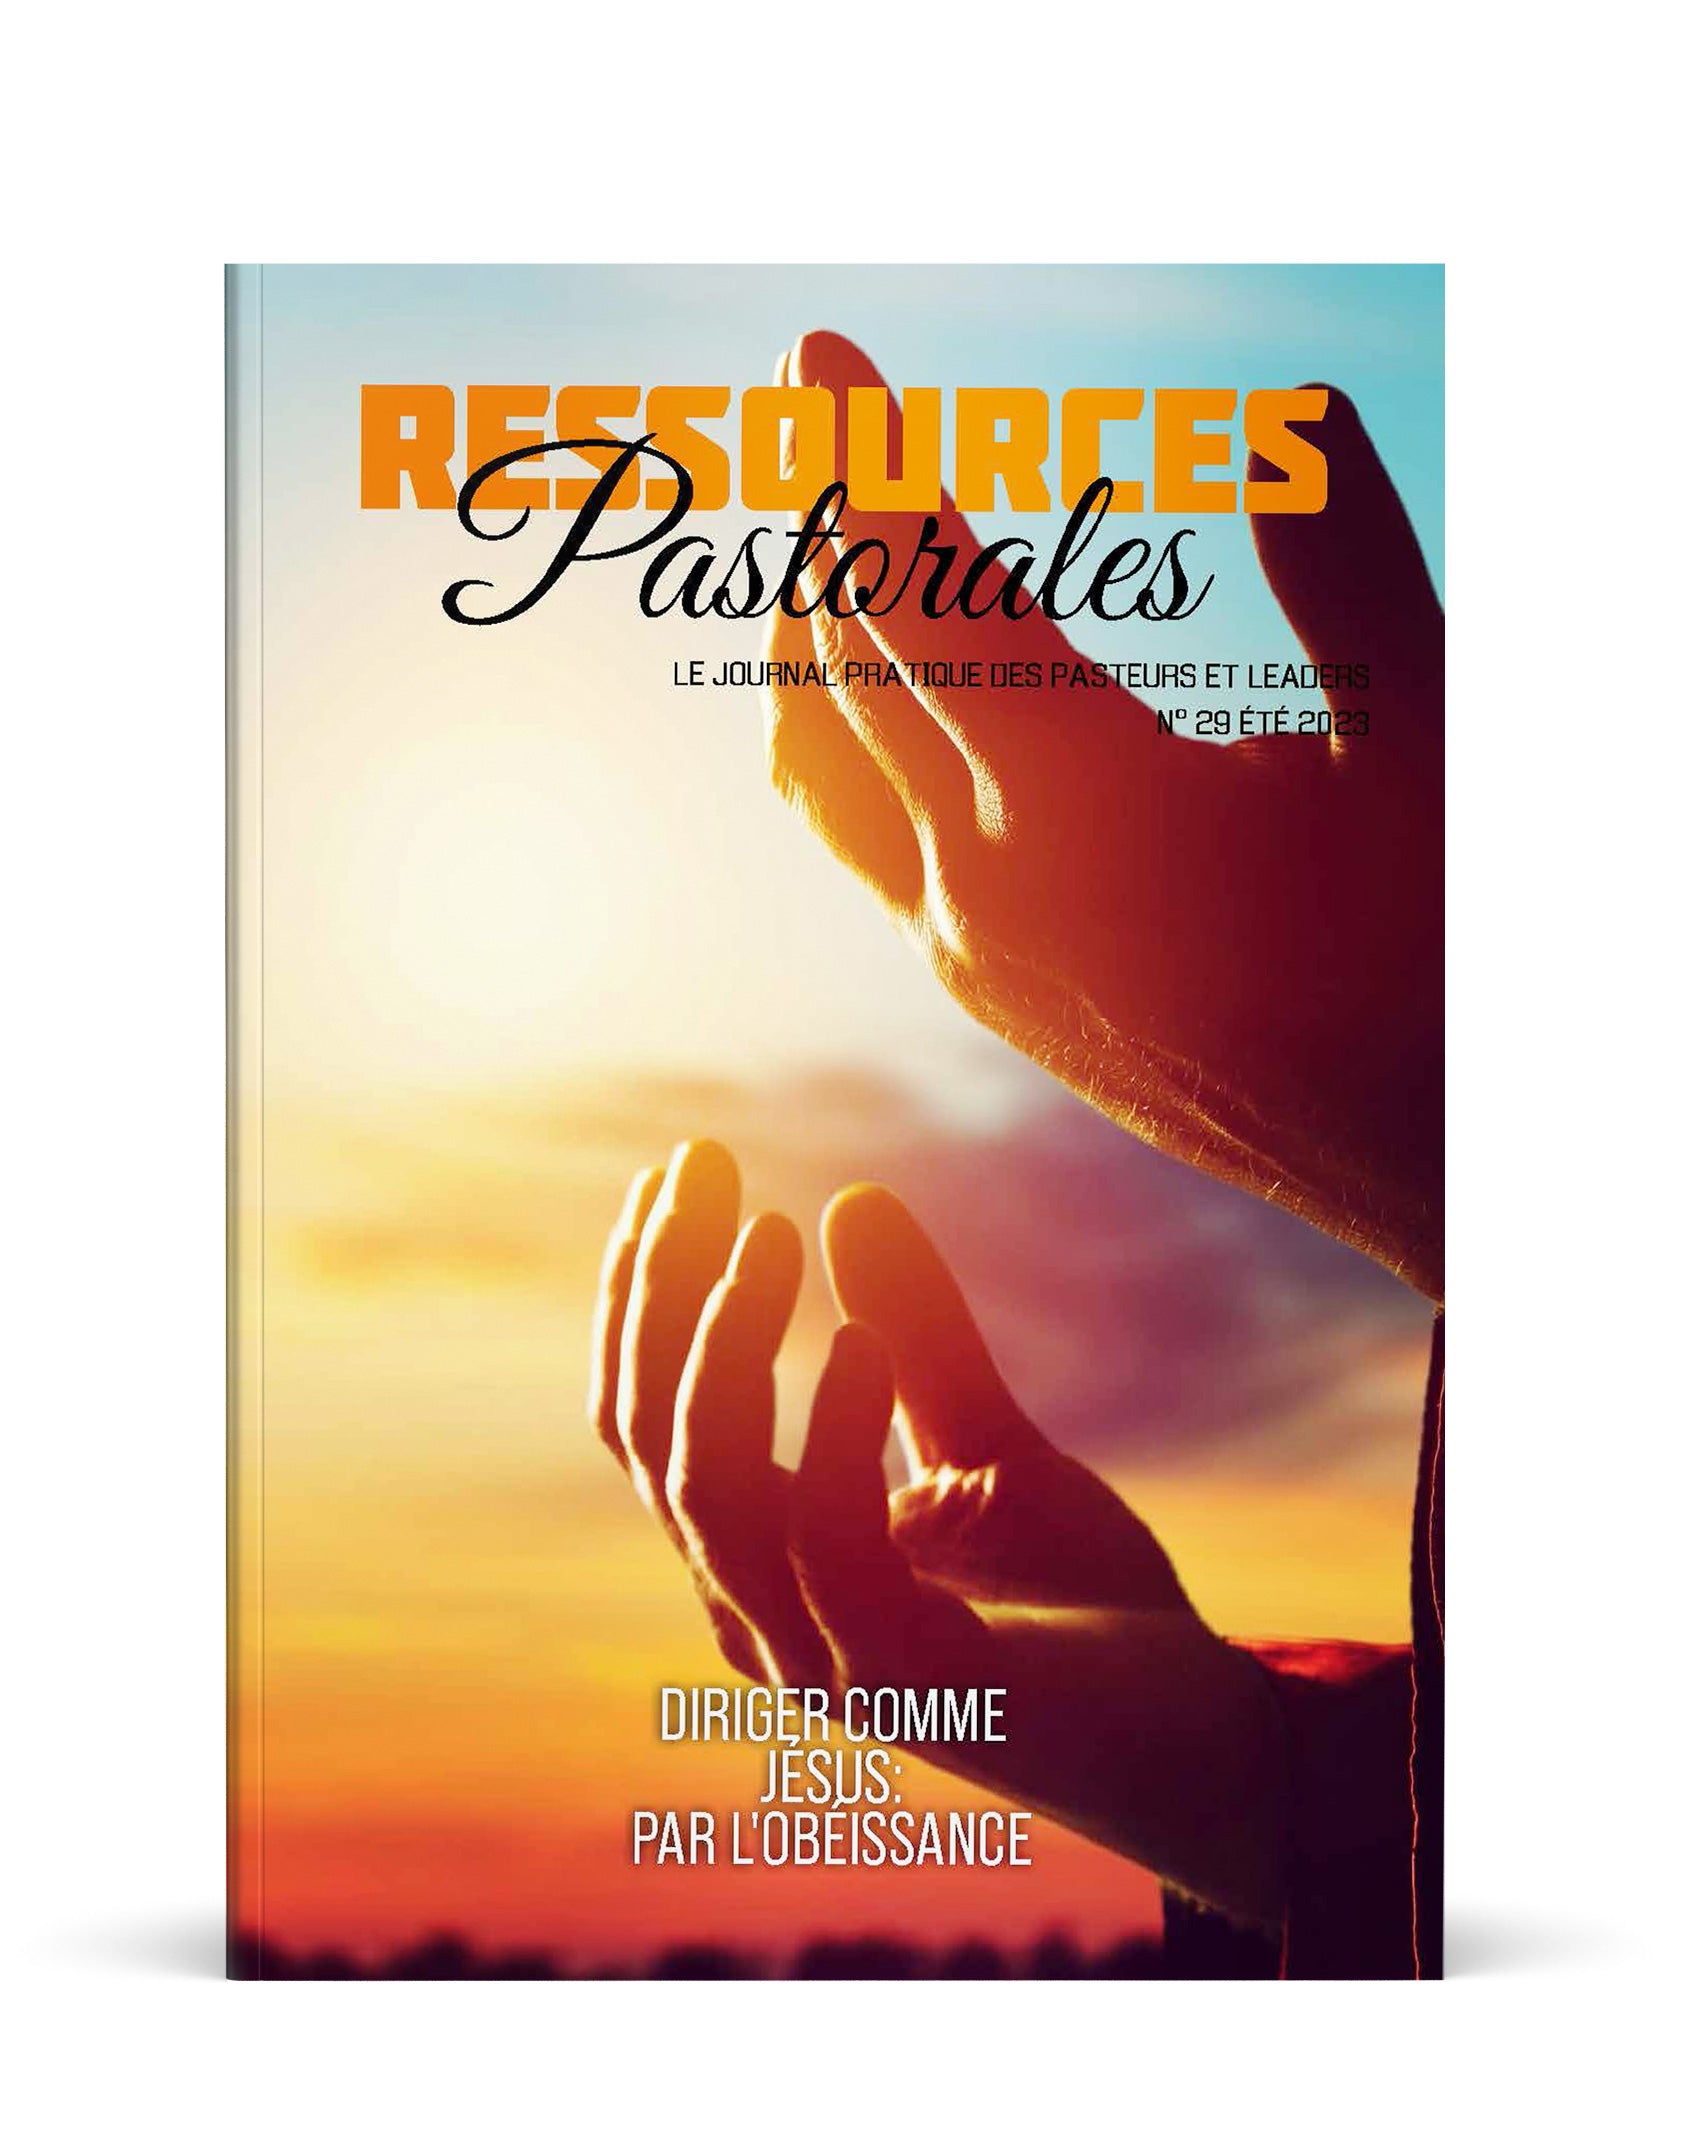 Diriger comme Jésus: Par l'obéissance | Ressources pastorales numéro 29